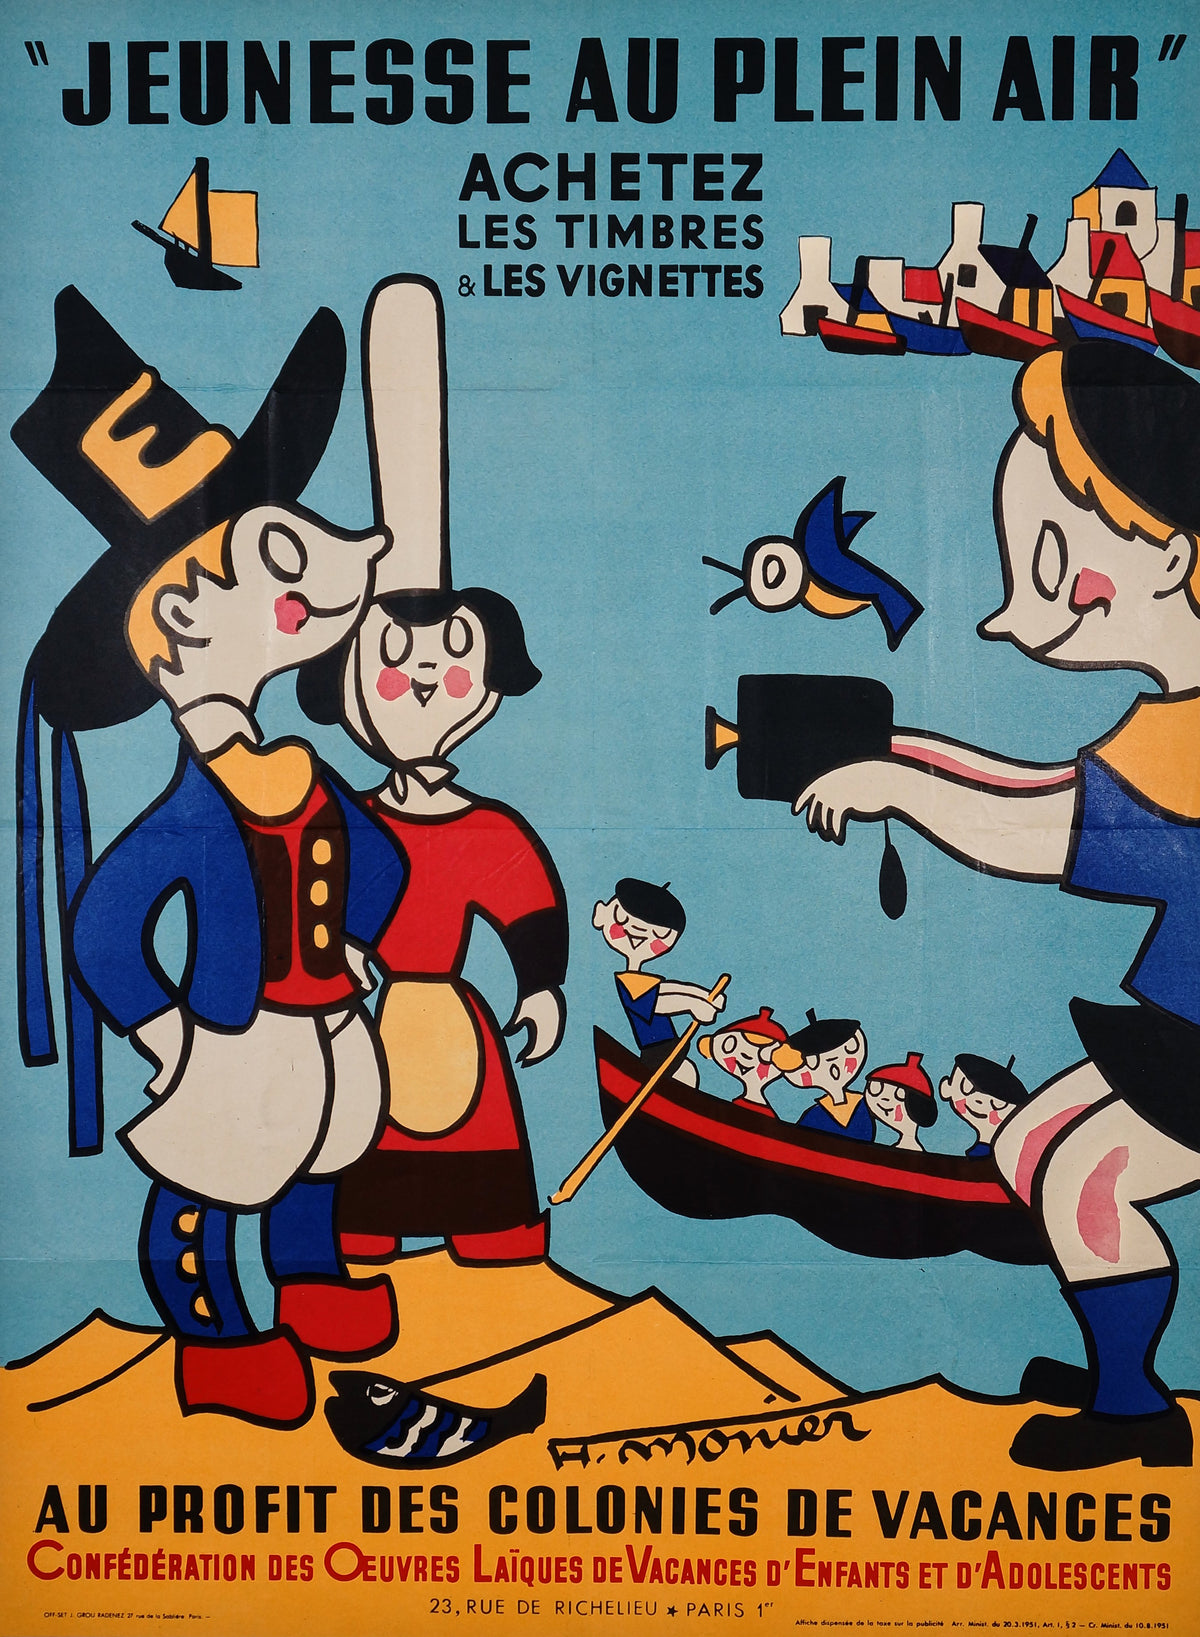 Henri Monier - &quot;Jeunesse au plein air&quot; - Authentic Vintage Poster